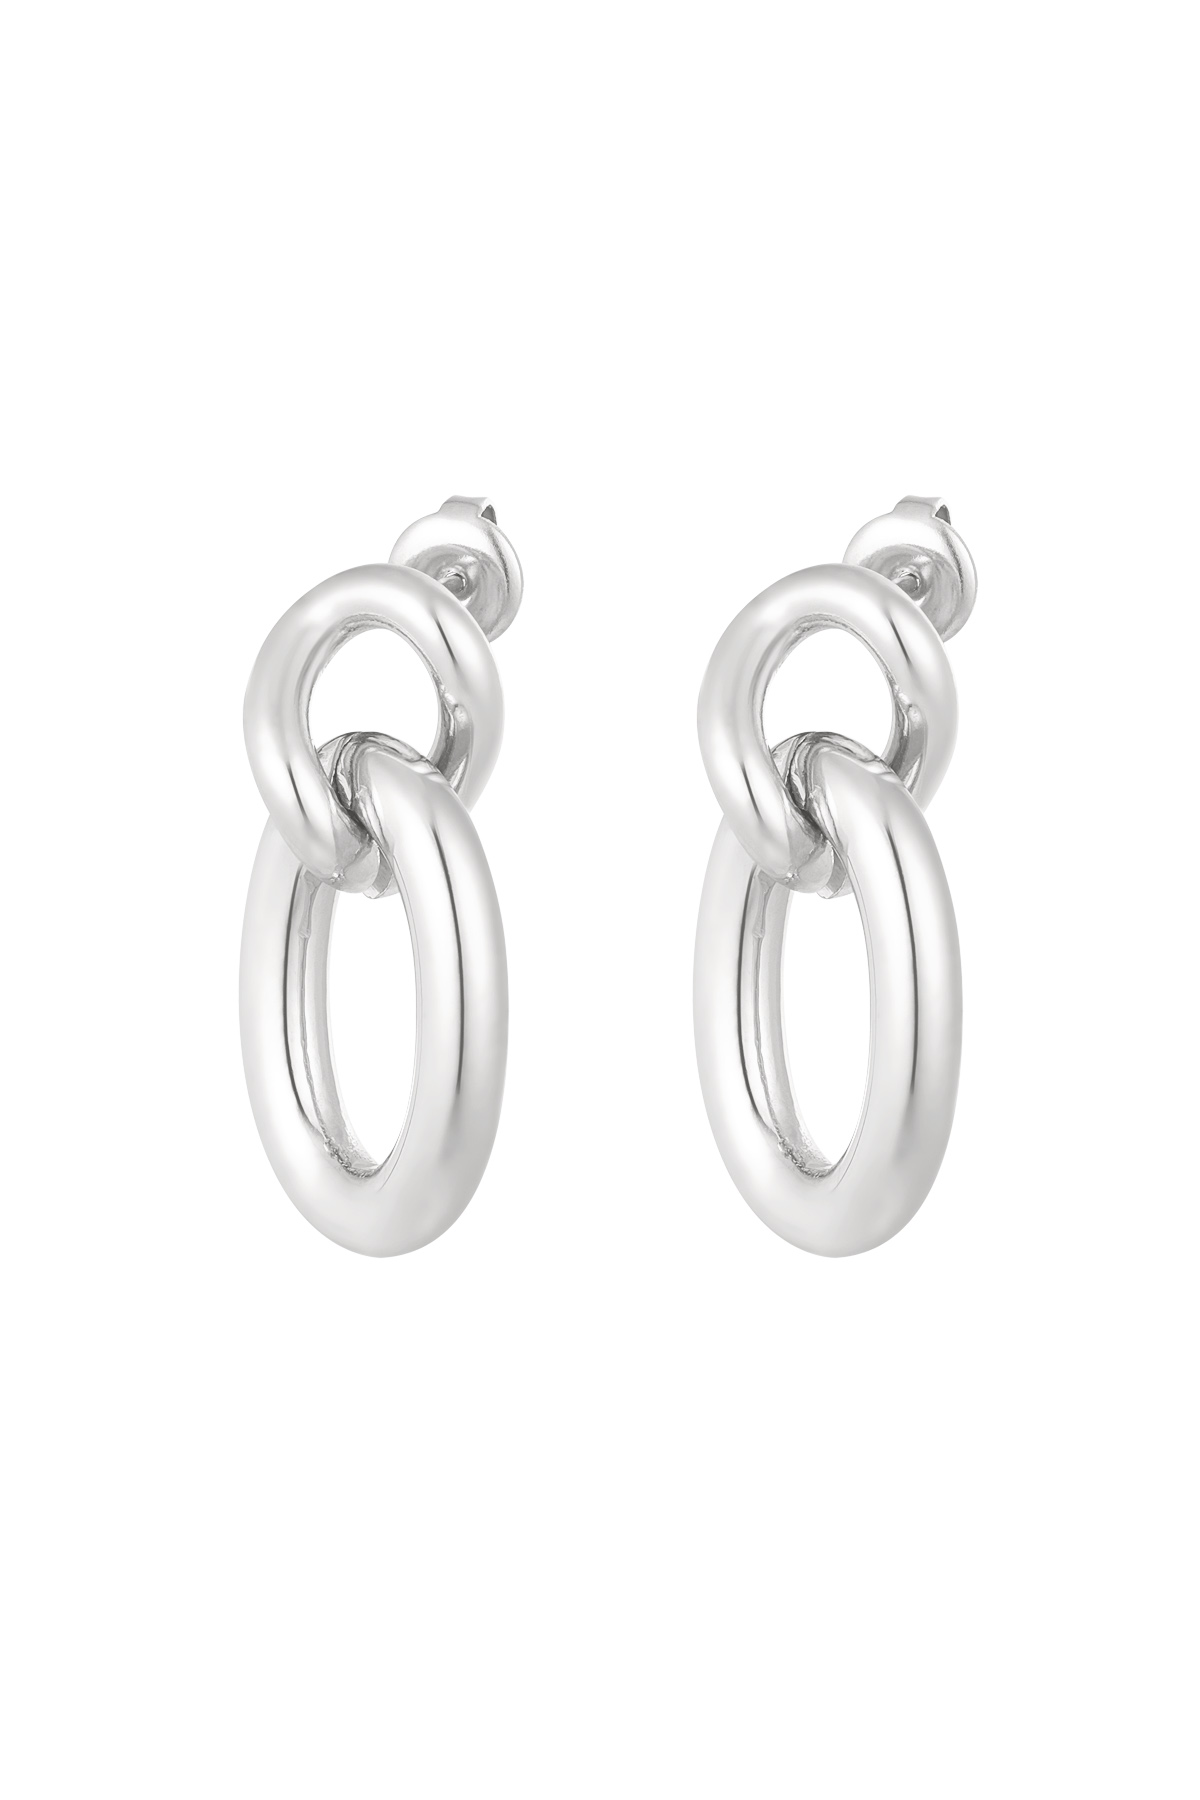 Earrings links - silver 